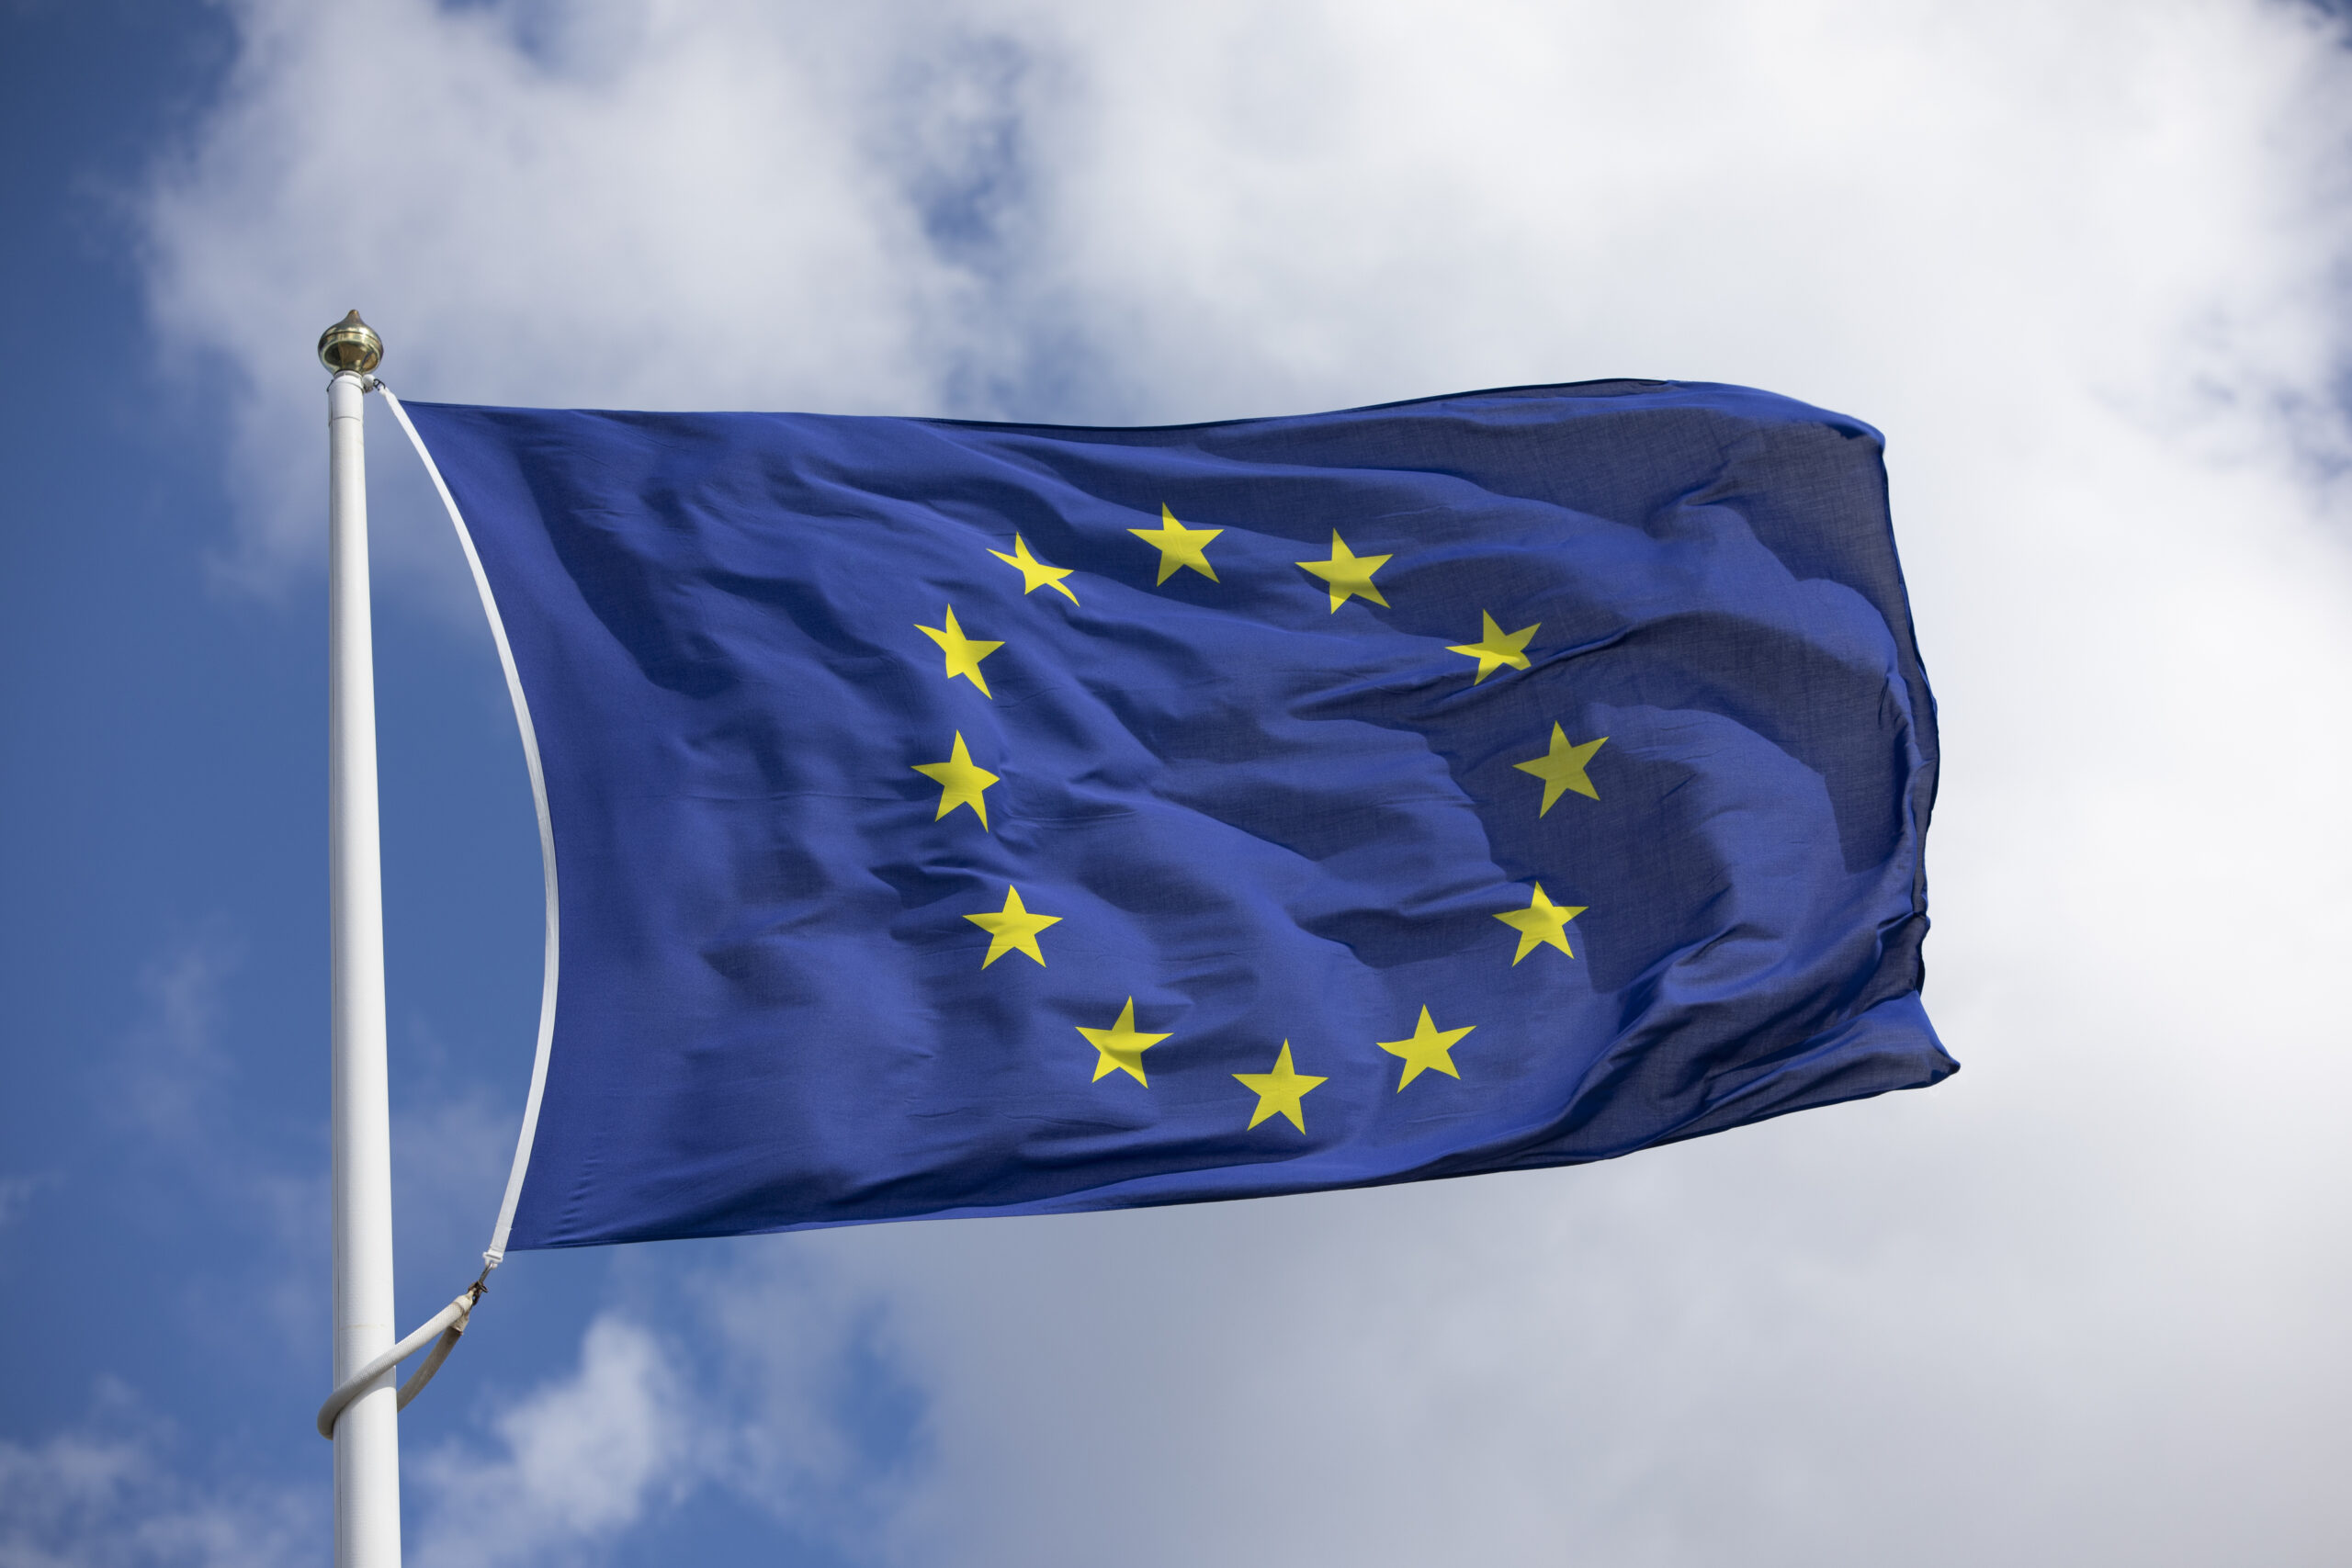 Øverste del av flaggstang med EU-flagget vaiende i vinden mot himmel som er blå med hvite skyer.